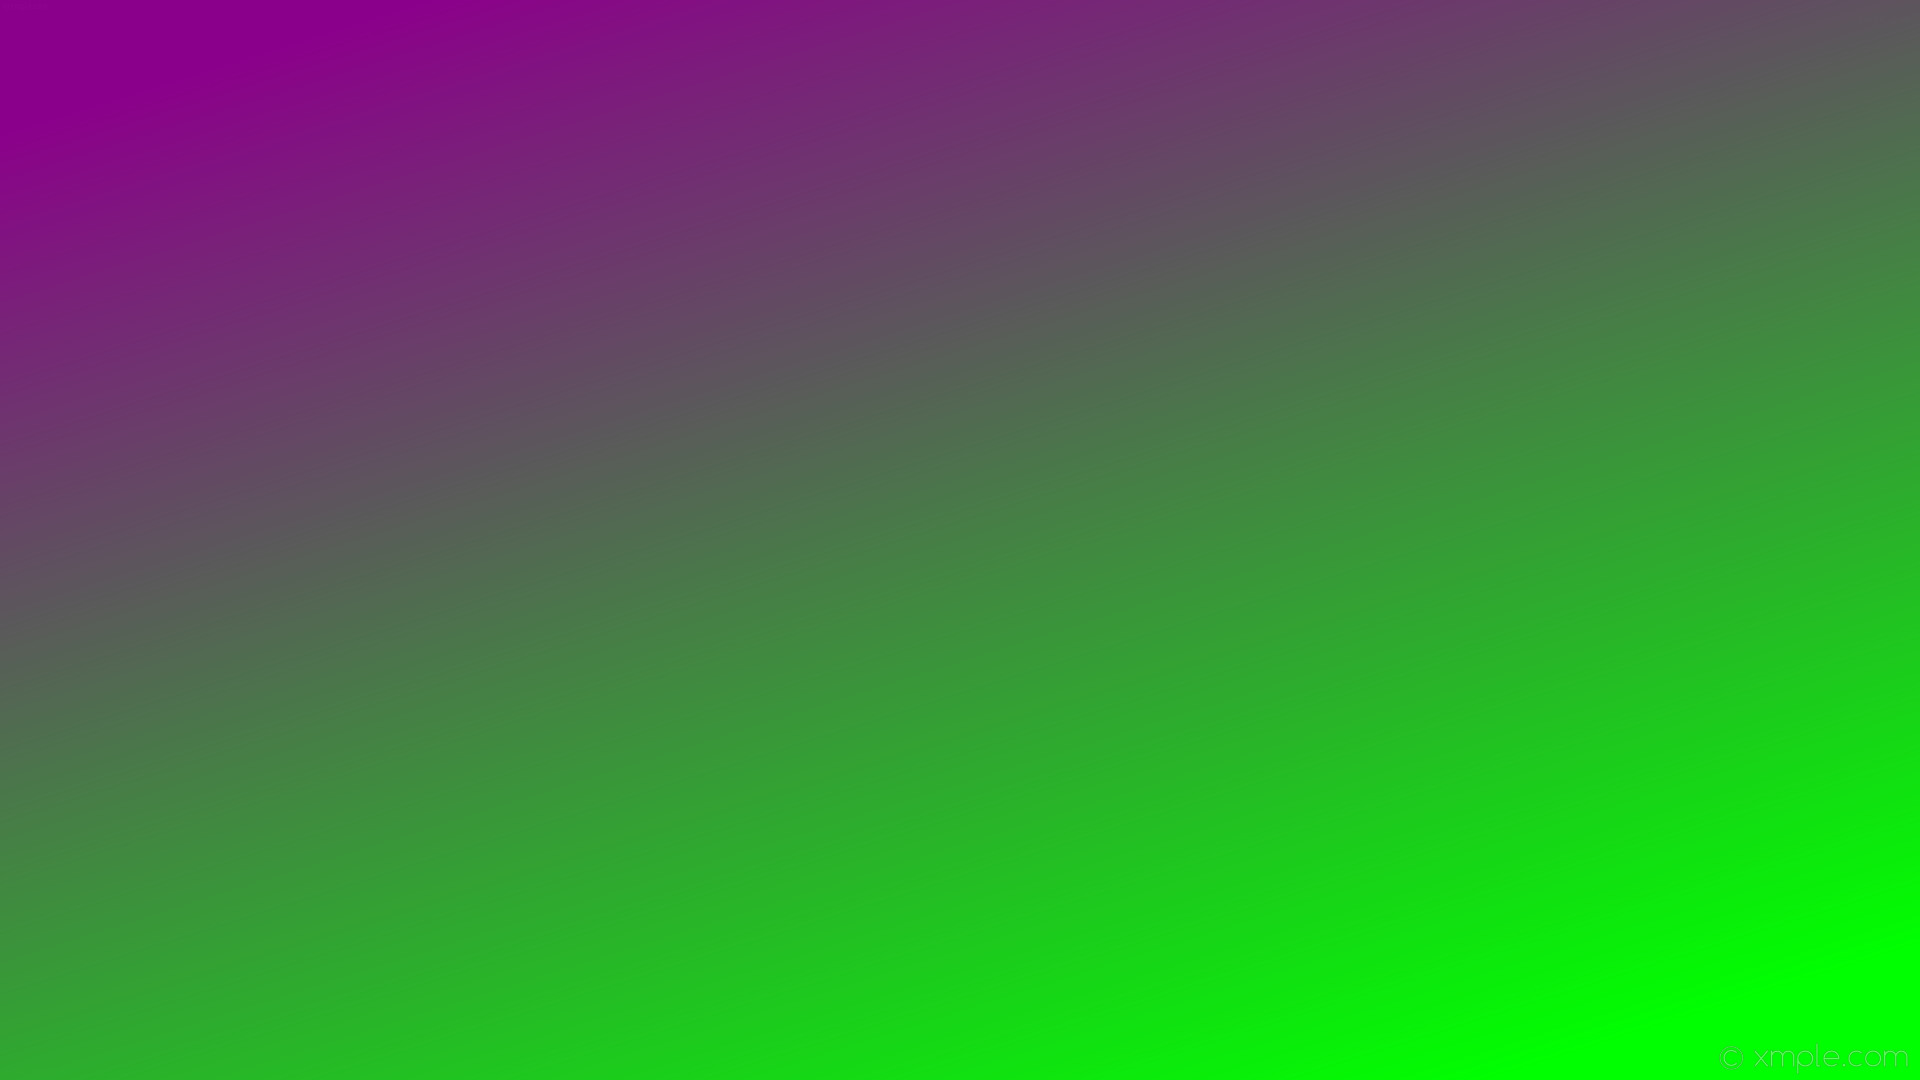 1920x1080 wallpaper green linear gradient purple lime dark magenta #00ff00 #8b008b  315Â°